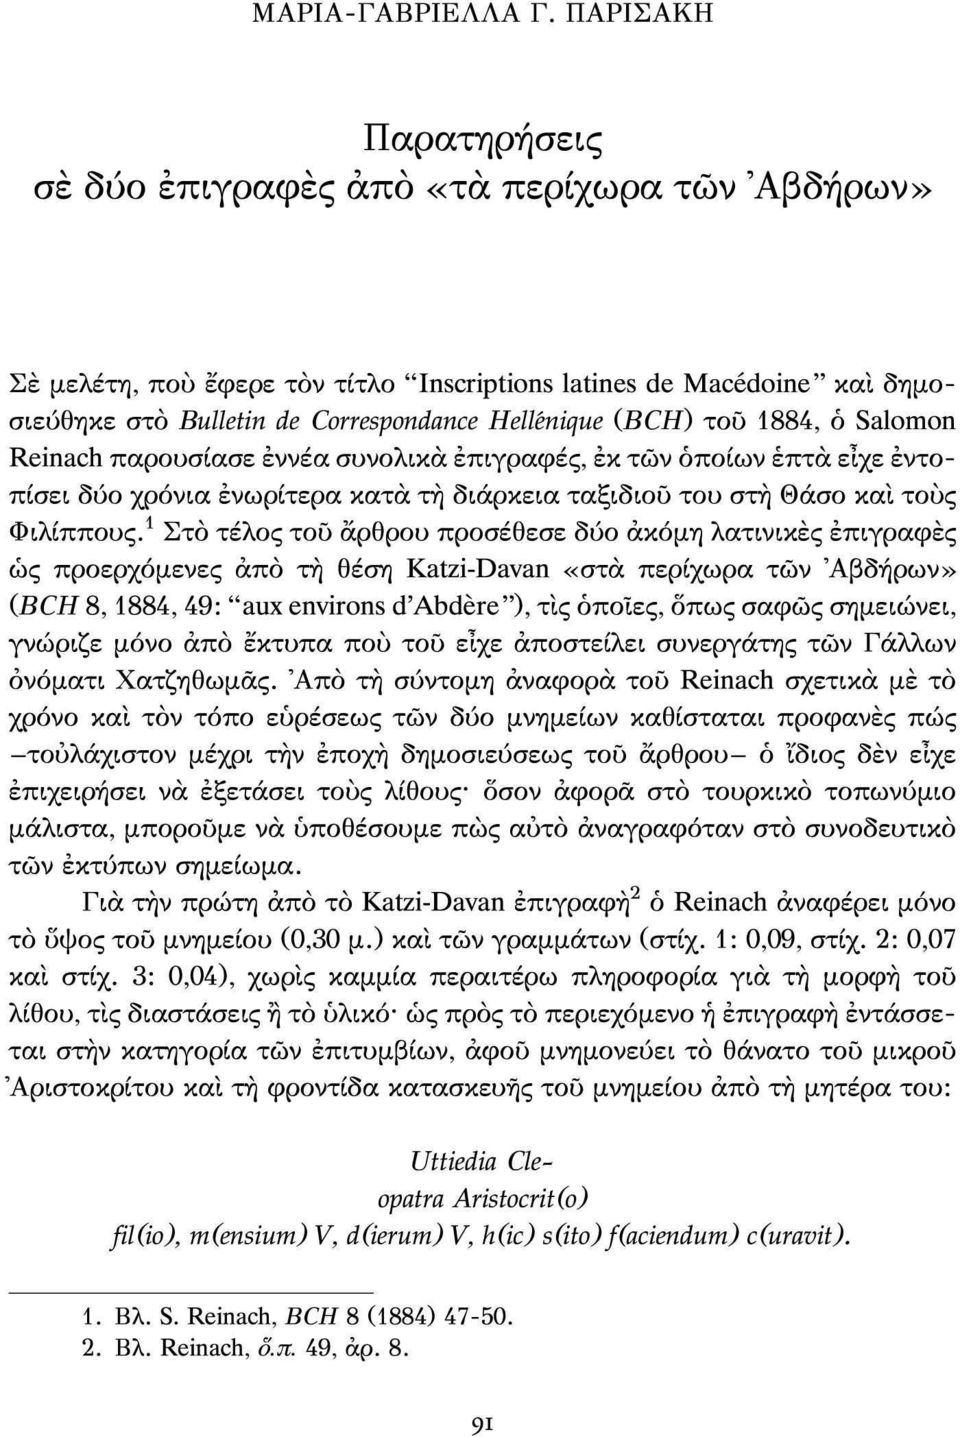 1 Στο τέλος του άρθρου προσέθεσε δύο ακόμη λατινικές επιγραφές ώς προερχόμενες από τη θέση Katzi-Davan «στα περίχωρα των Αβδήρων» (BCH 8,1884, 49: "aux environs d'abdère"), τίς όποιες, όπως σαφώς